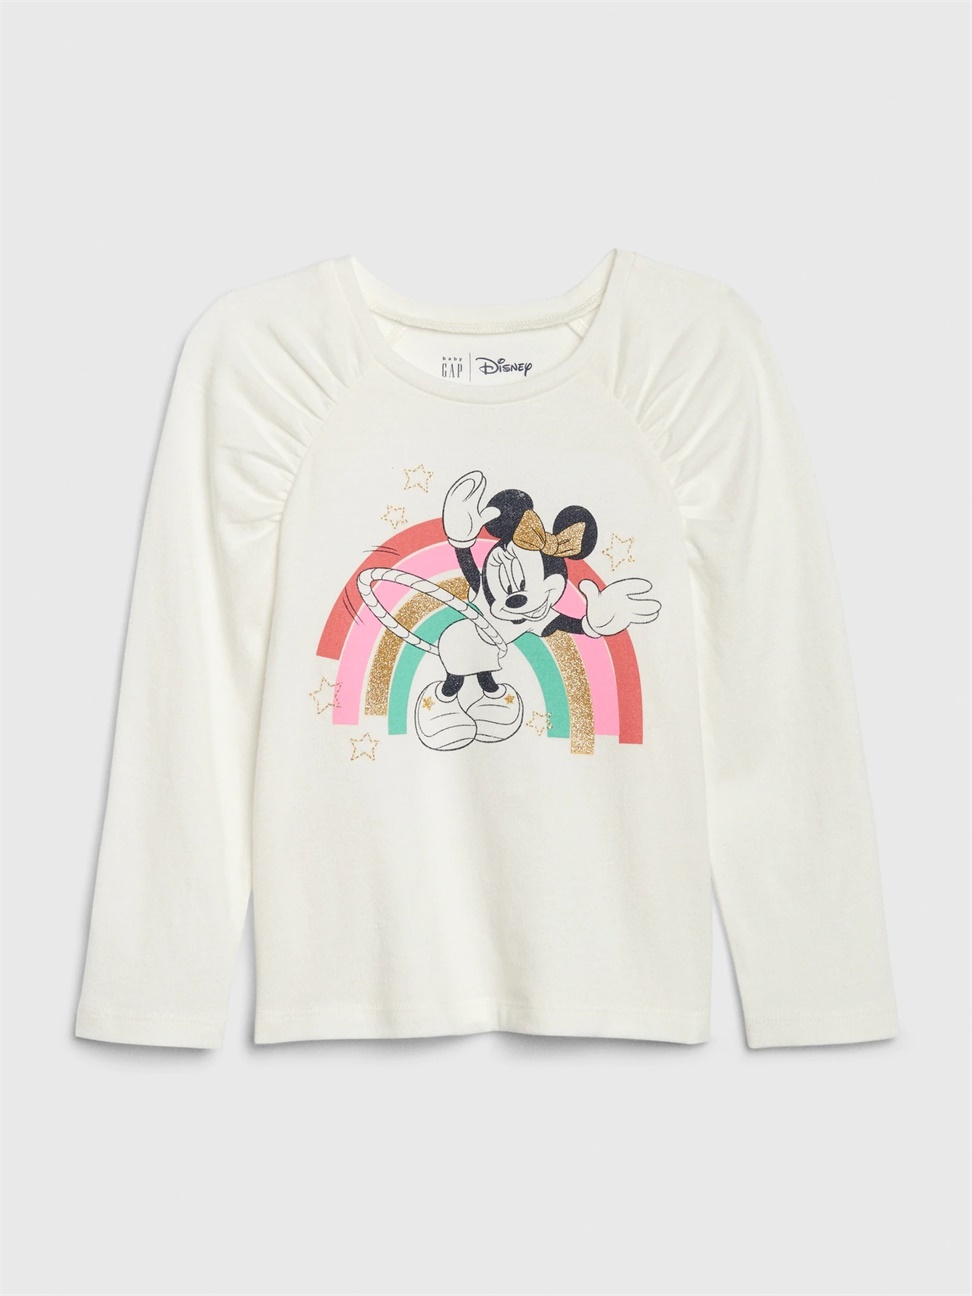 女幼童裝|Gap x Disney迪士尼聯名 米妮印花上衣-彩虹色